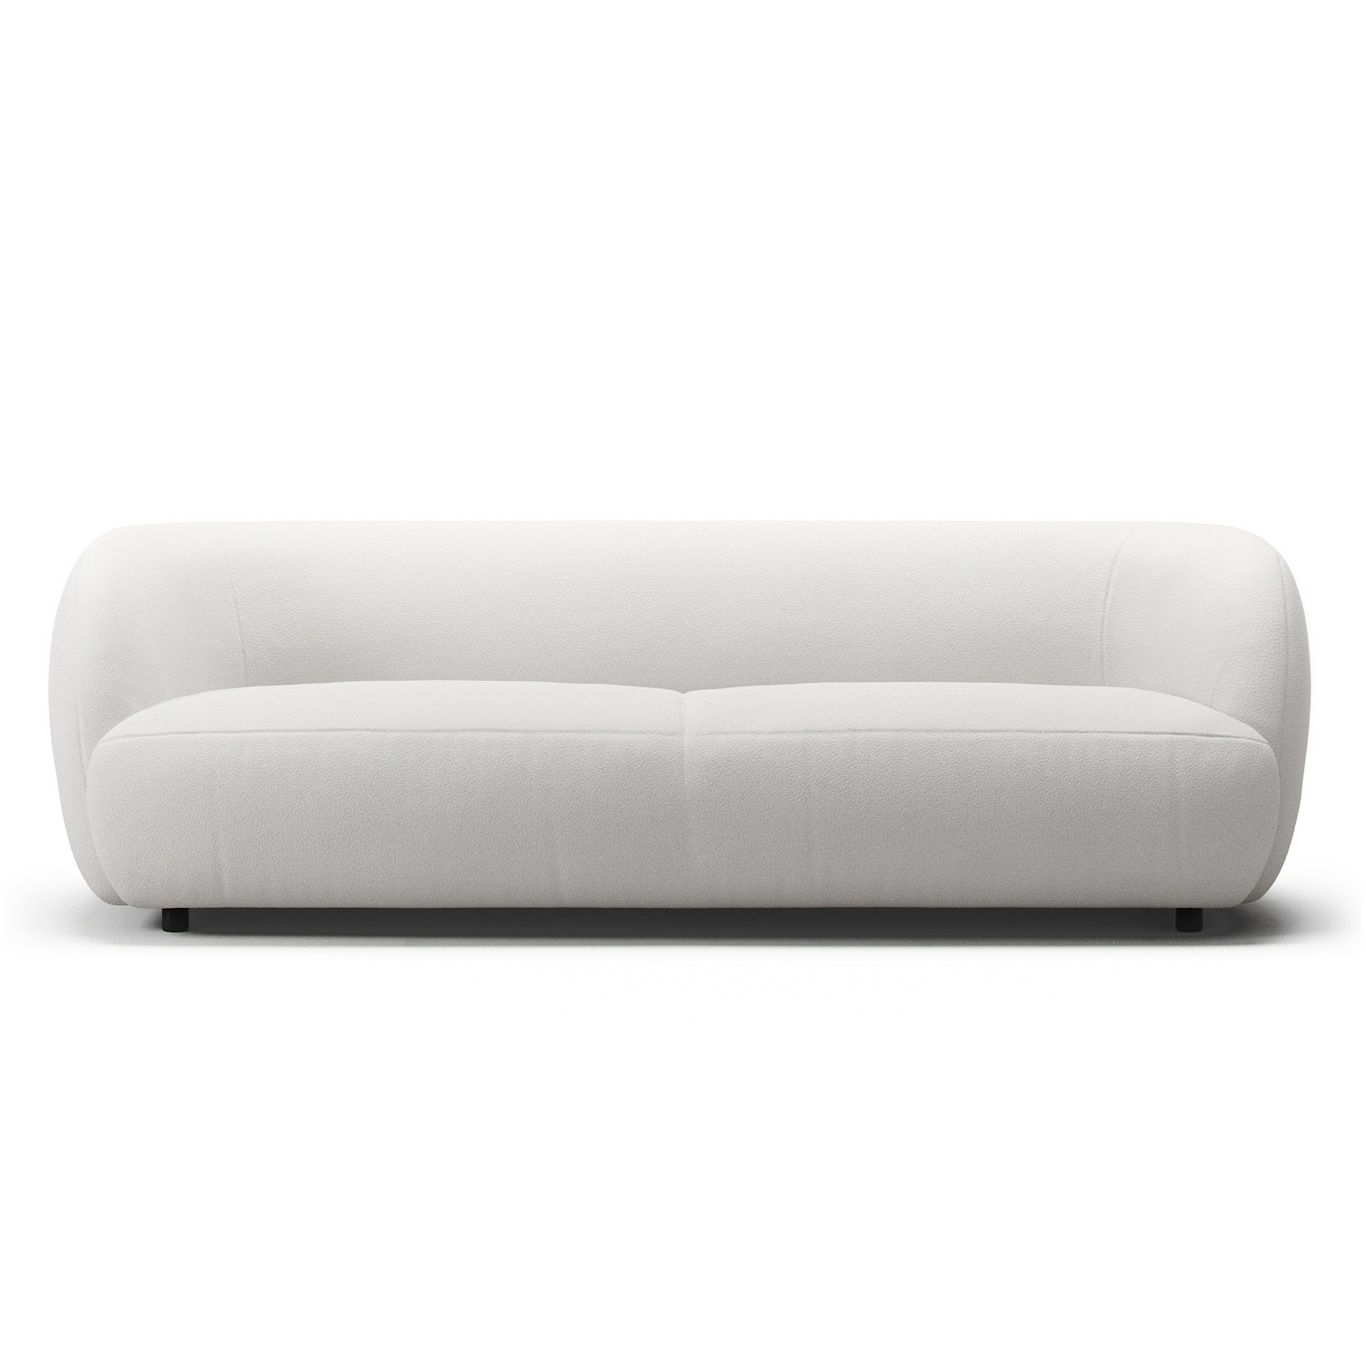 Atelier Sofa 3-Seater, Lush White